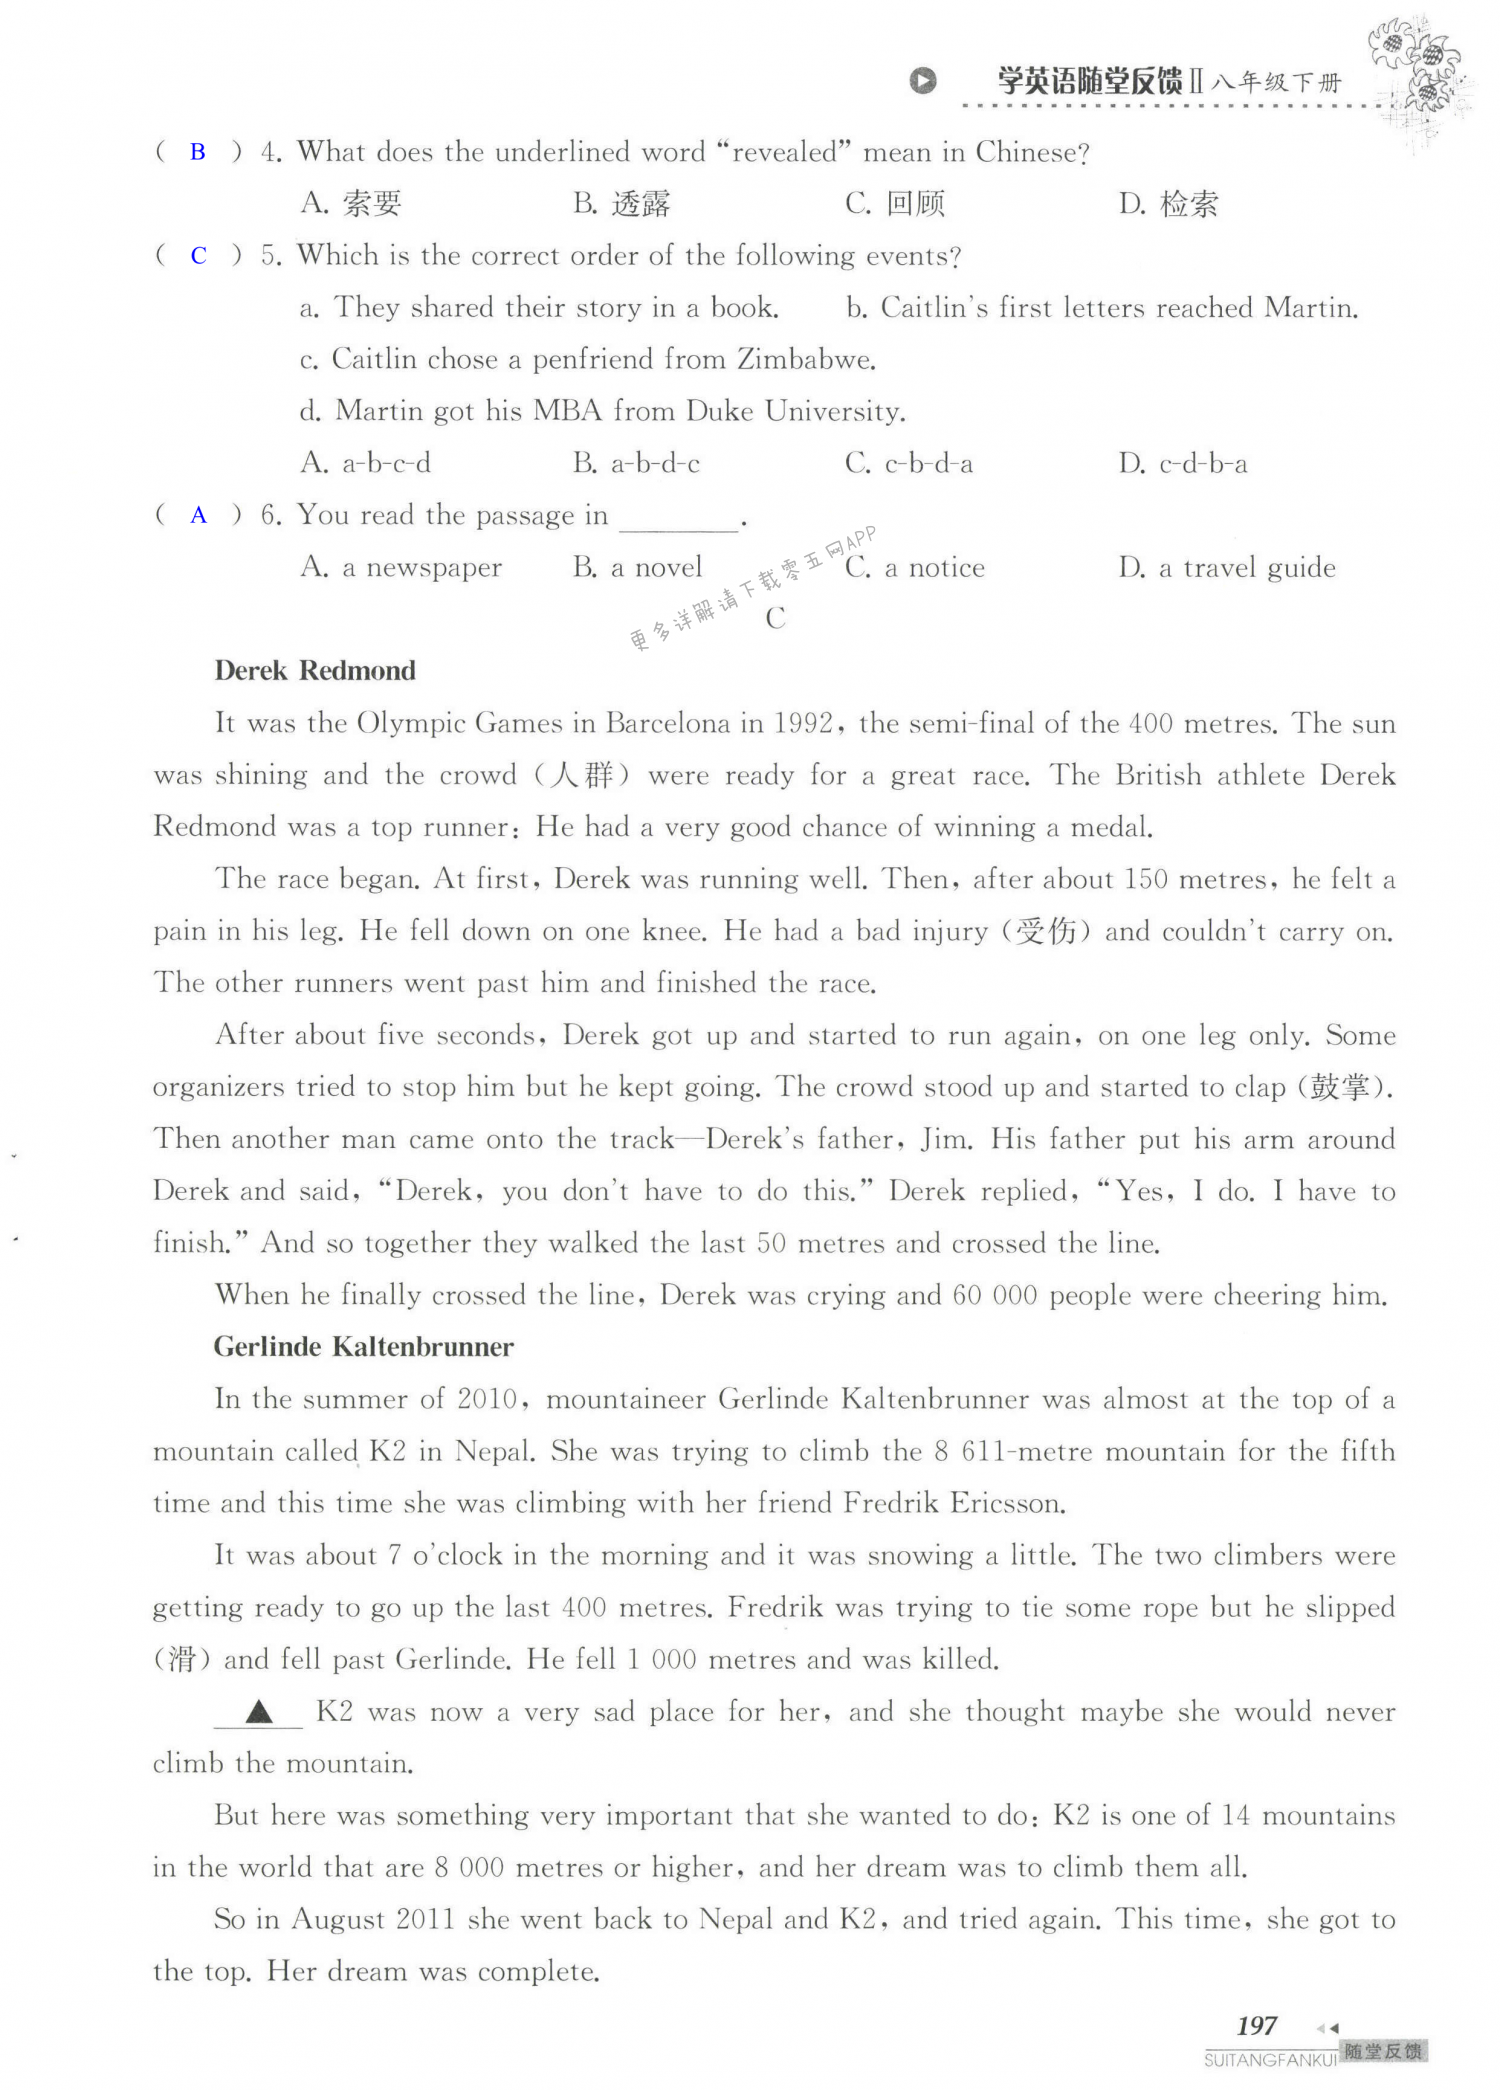 单元综合测试卷 Test for Unit 6 of 8B - 第197页